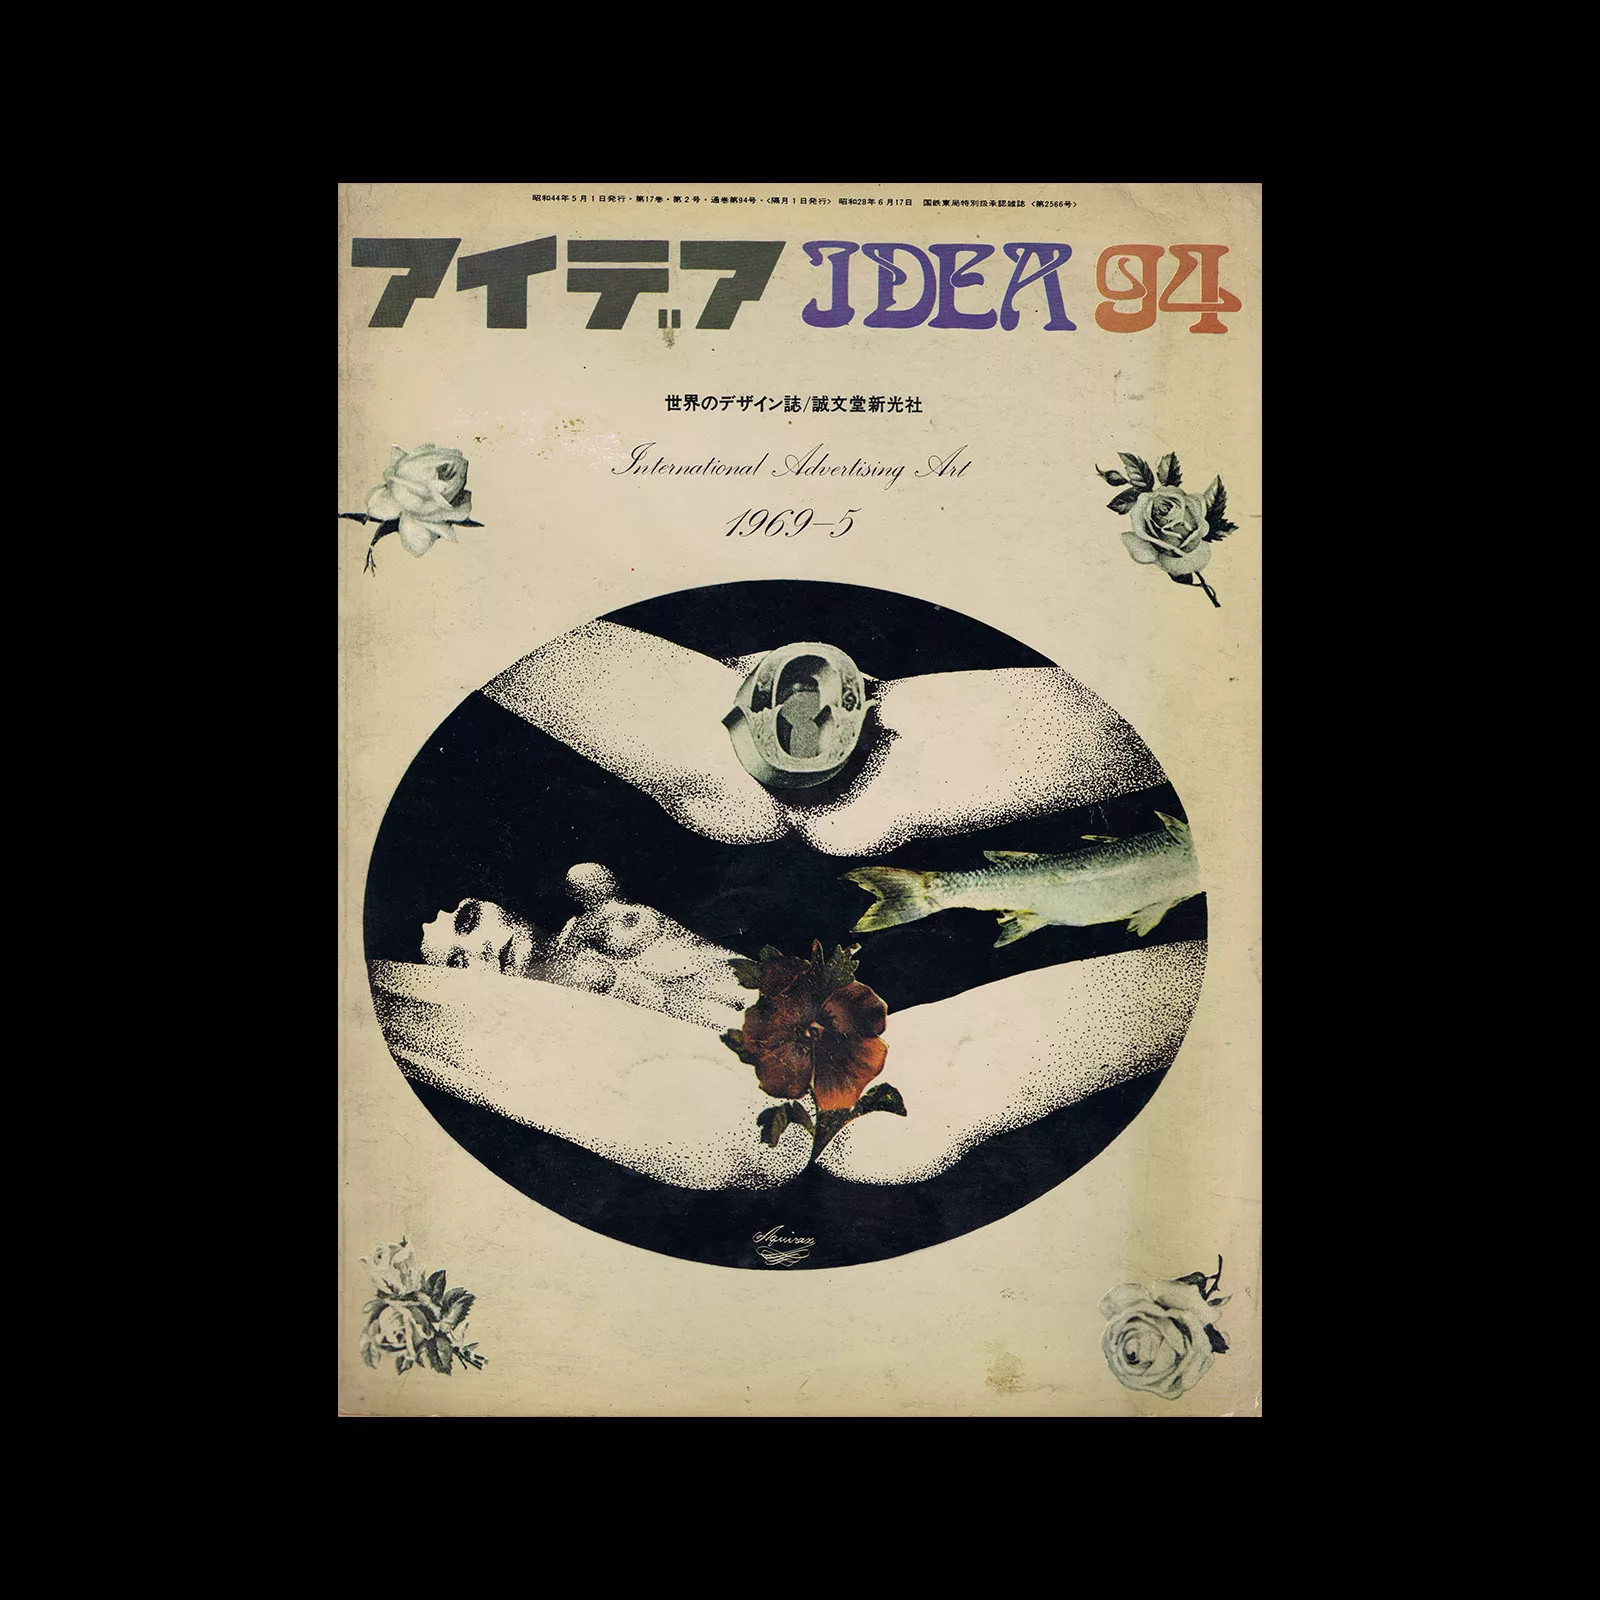 Idea 94, 1969-5. Cover design by Akira Uno